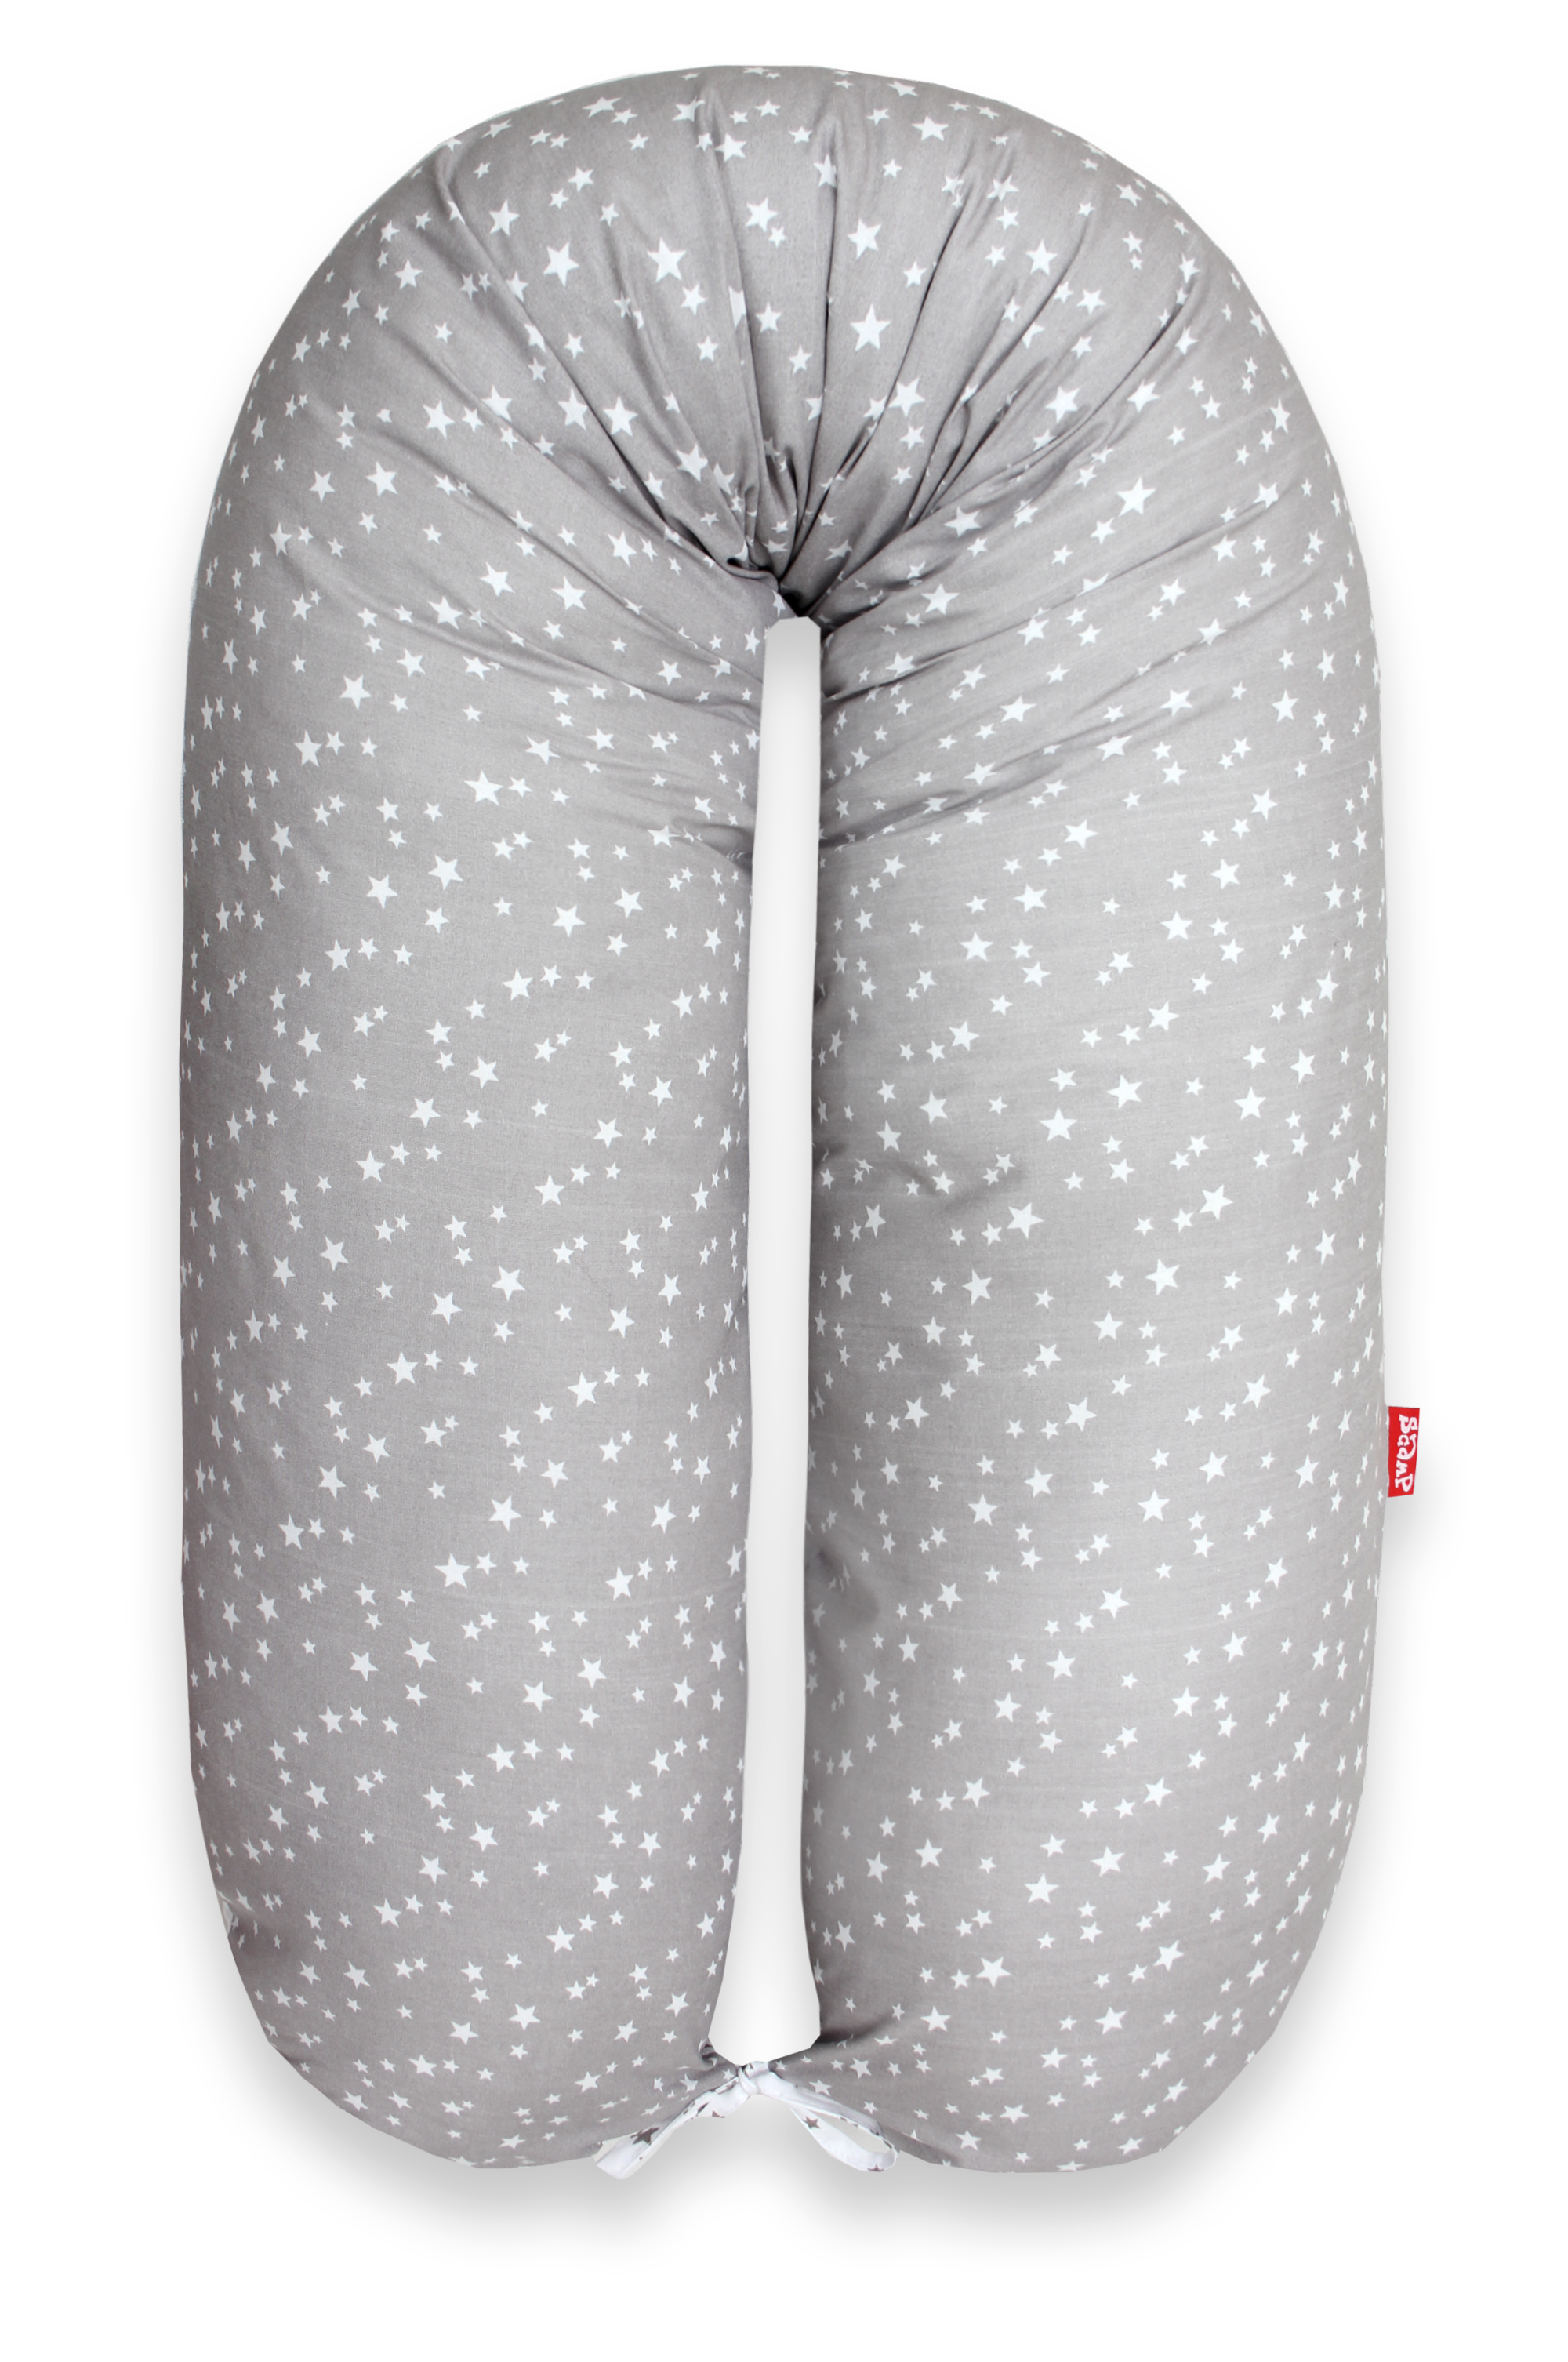 Scamp formázható univerzális szoptatós párna pamut huzattal /GreyWhiteLittleBigStarsNew